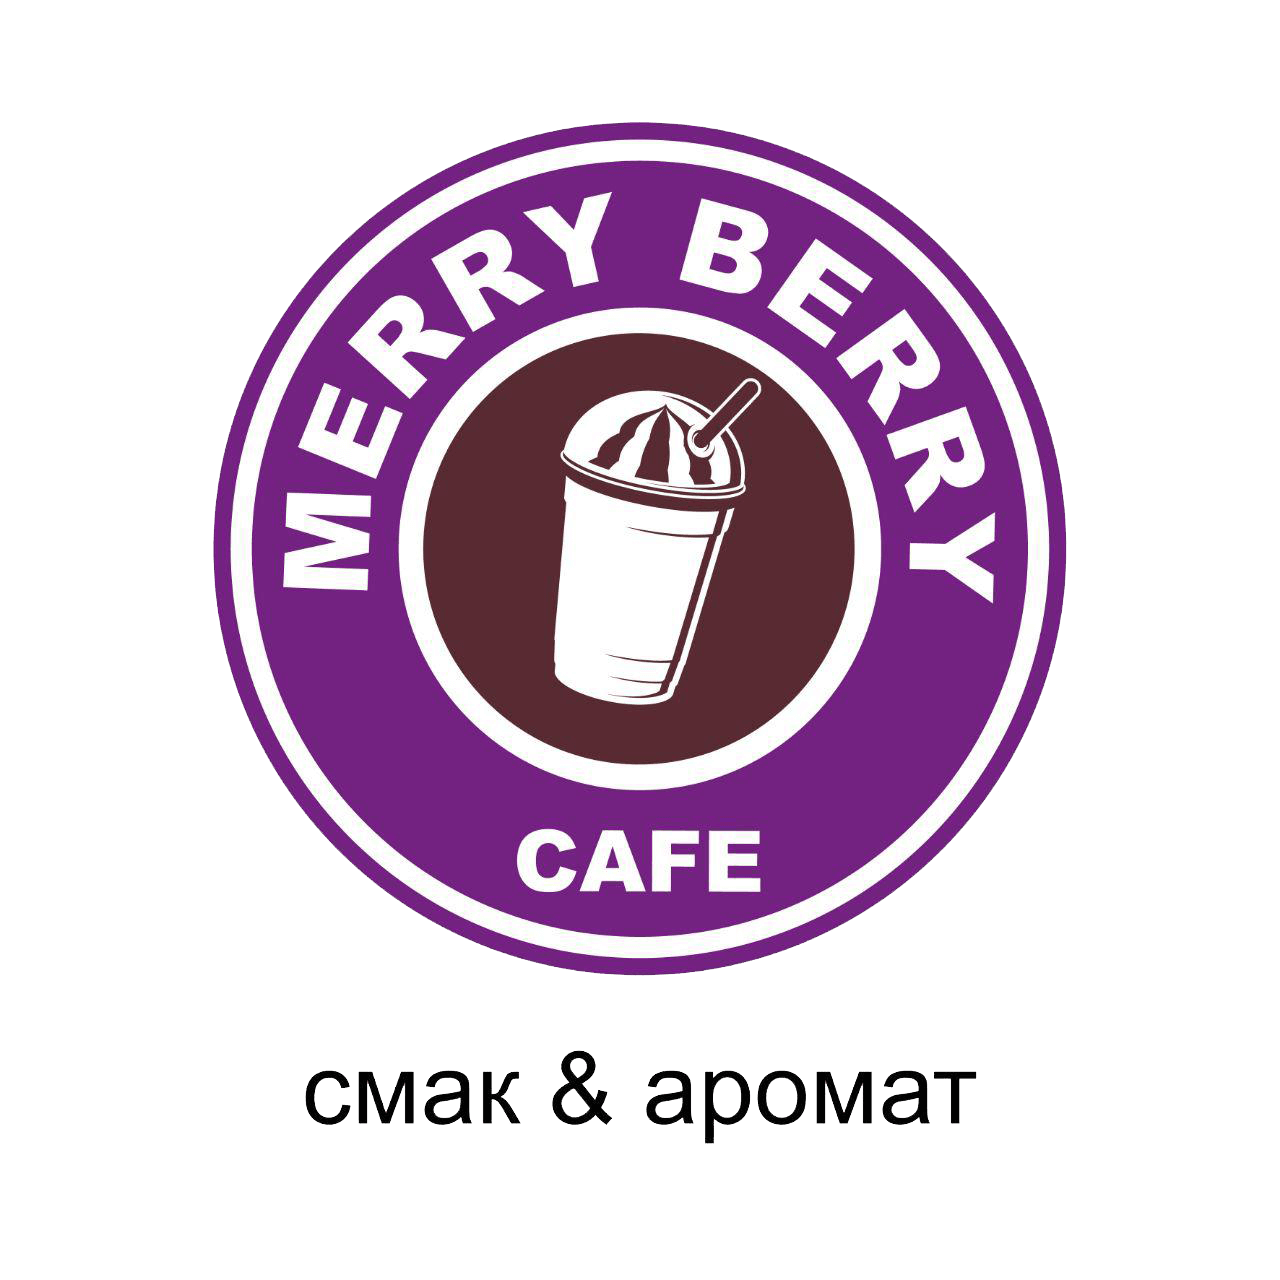 MERRY BERRY CAFE лого